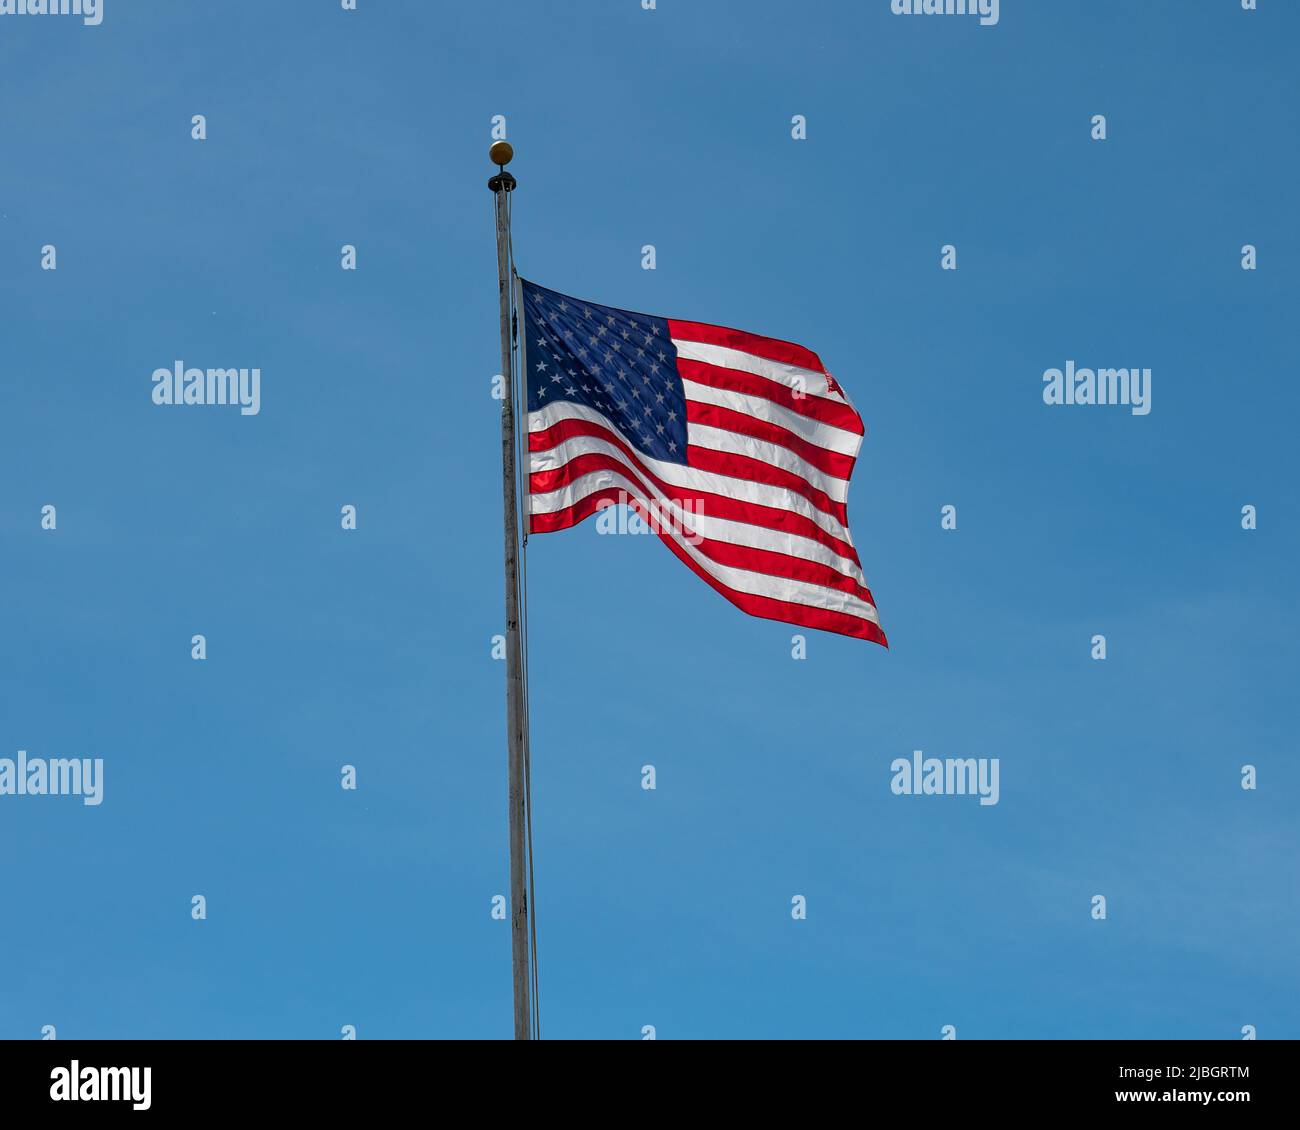 Una bandera azul y blanca brillante de América ondeando en un fondo azul claro del cielo Foto de stock